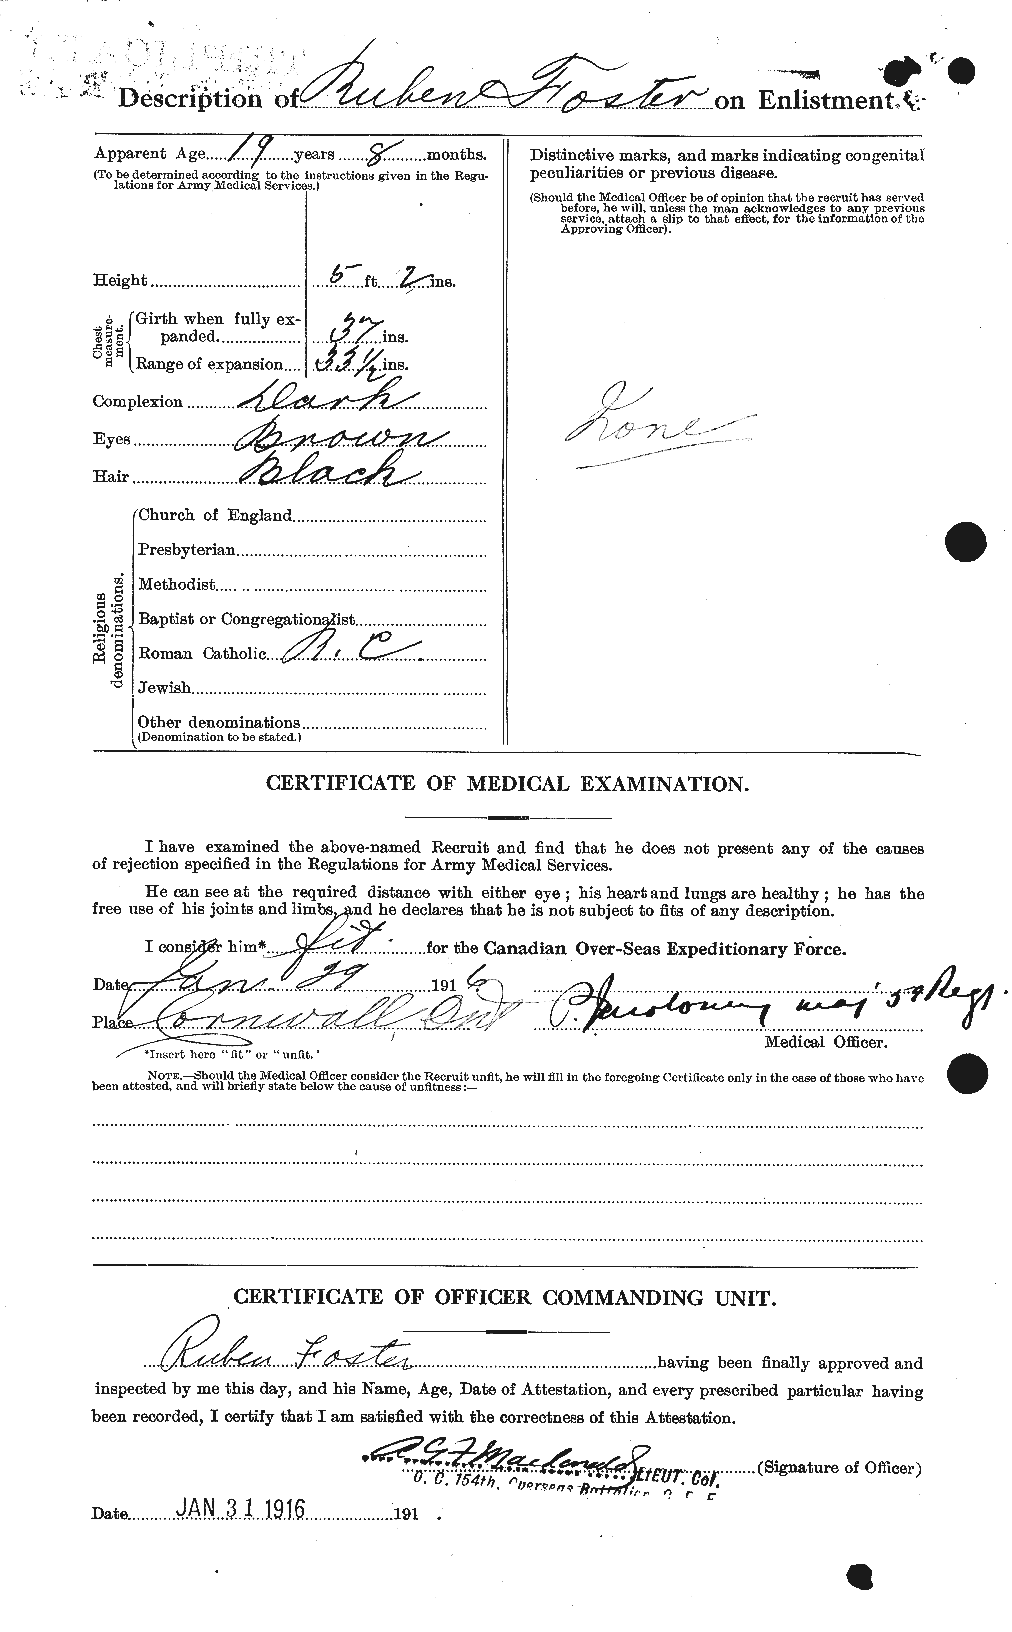 Dossiers du Personnel de la Première Guerre mondiale - CEC 335199b